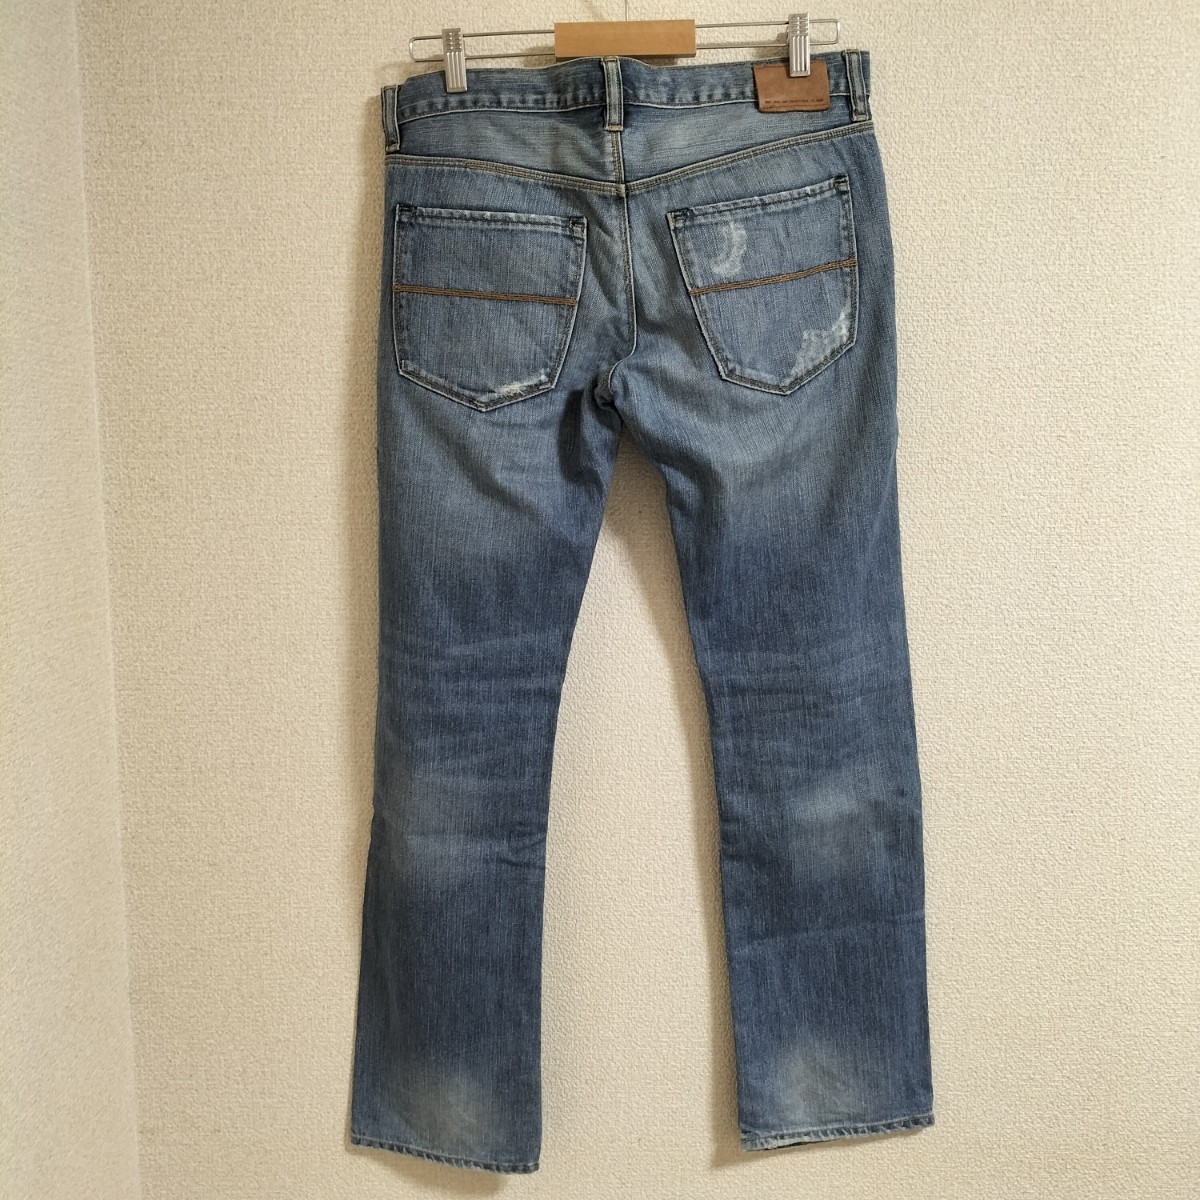 *OLD GAP 2010 год производства Denim брюки обтягивающий повреждение джинсы ji- хлеб низ Gap Old Vintage редкость бренд б/у одежда USED